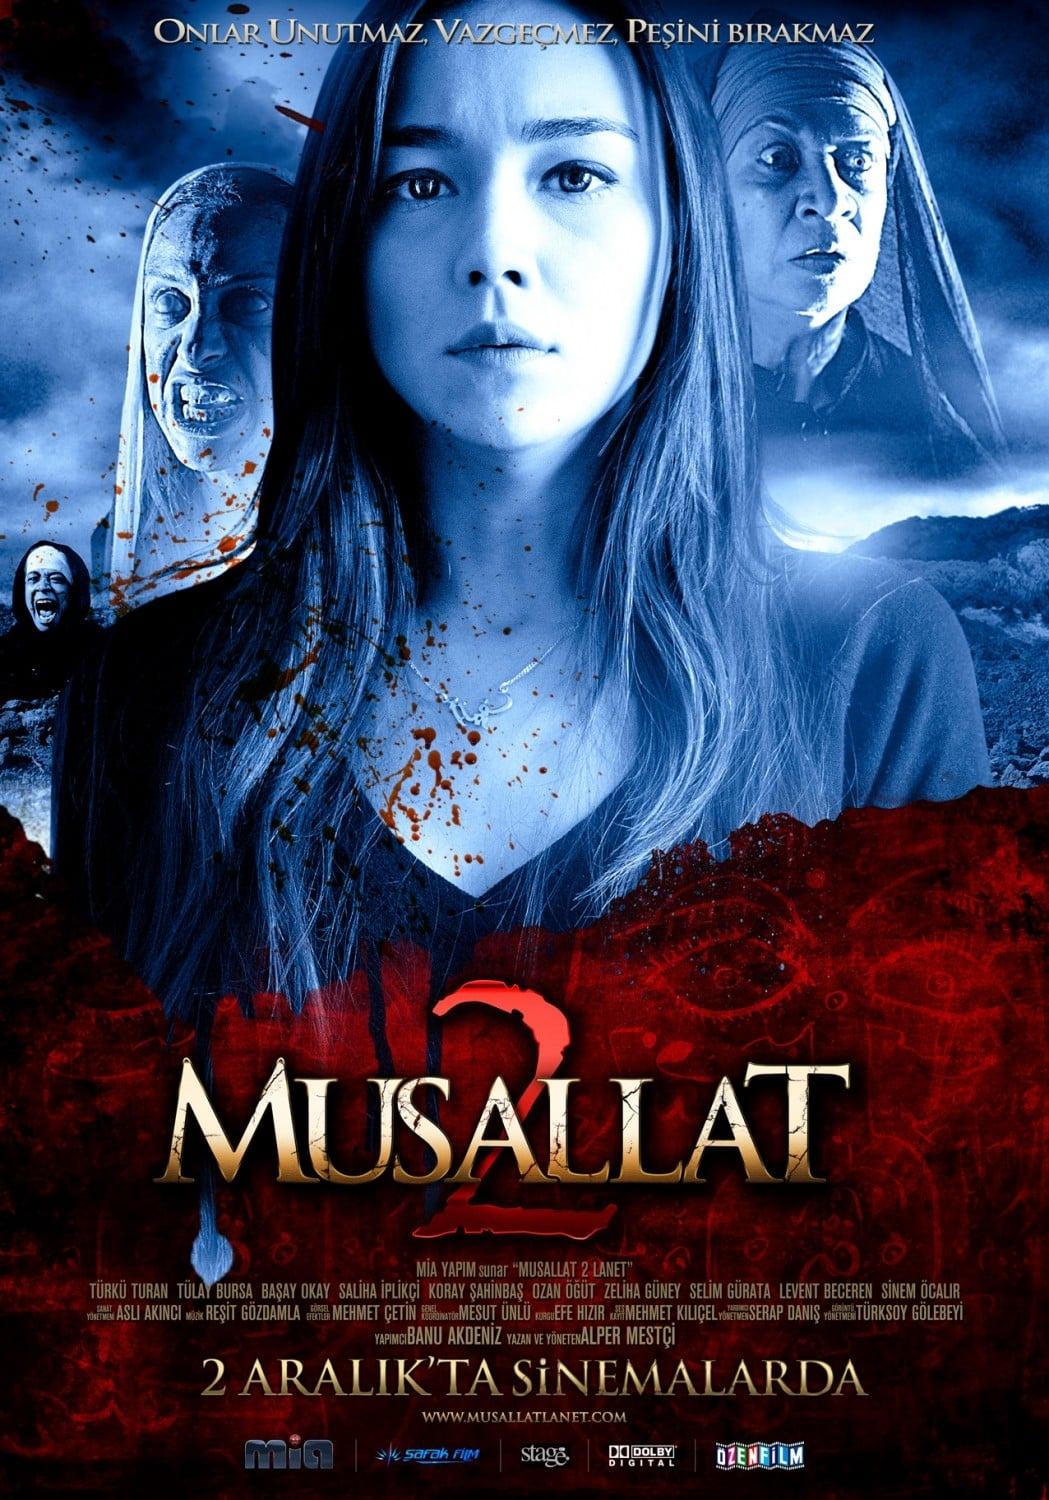 Musallat 2: Lanet poster